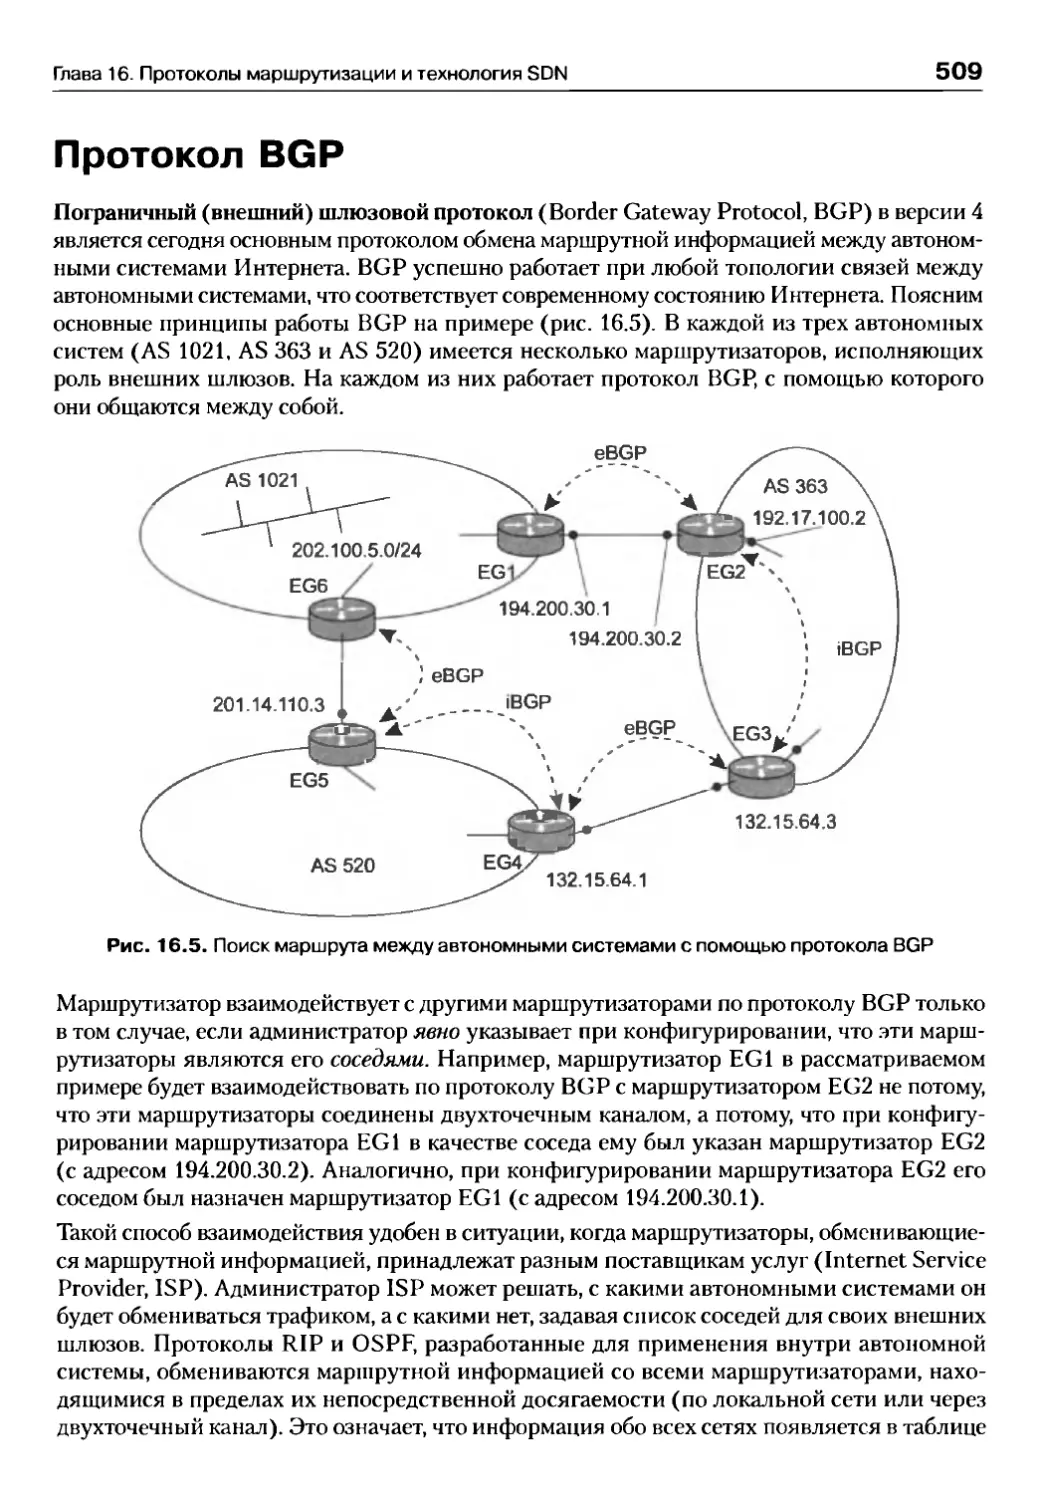 Протокол BGP